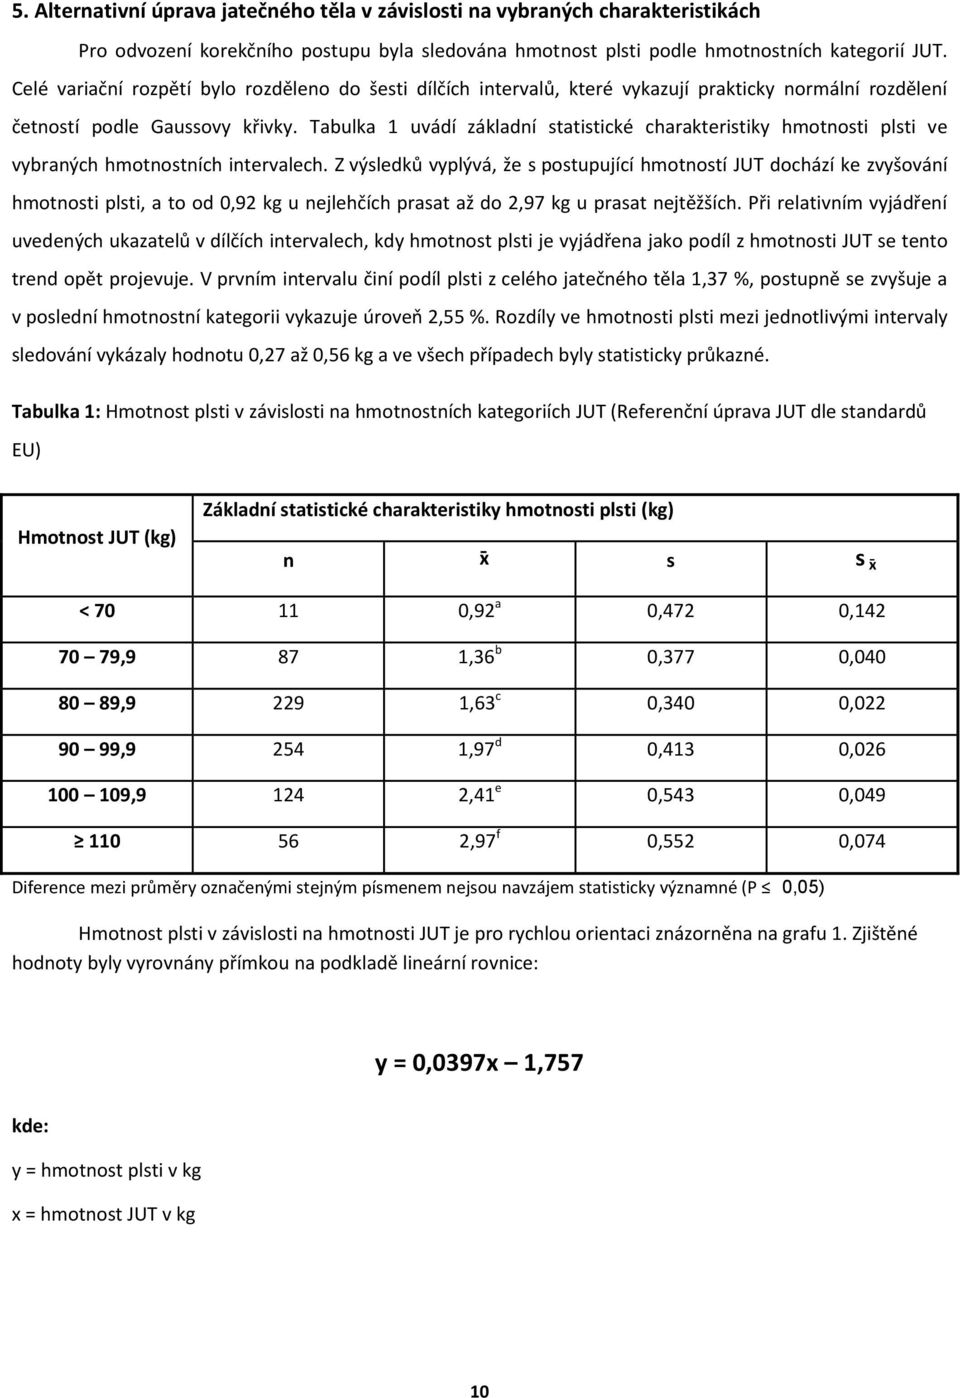 Tabulka 1 uvádí základní statistické charakteristiky hmotnosti plsti ve vybraných hmotnostních intervalech.